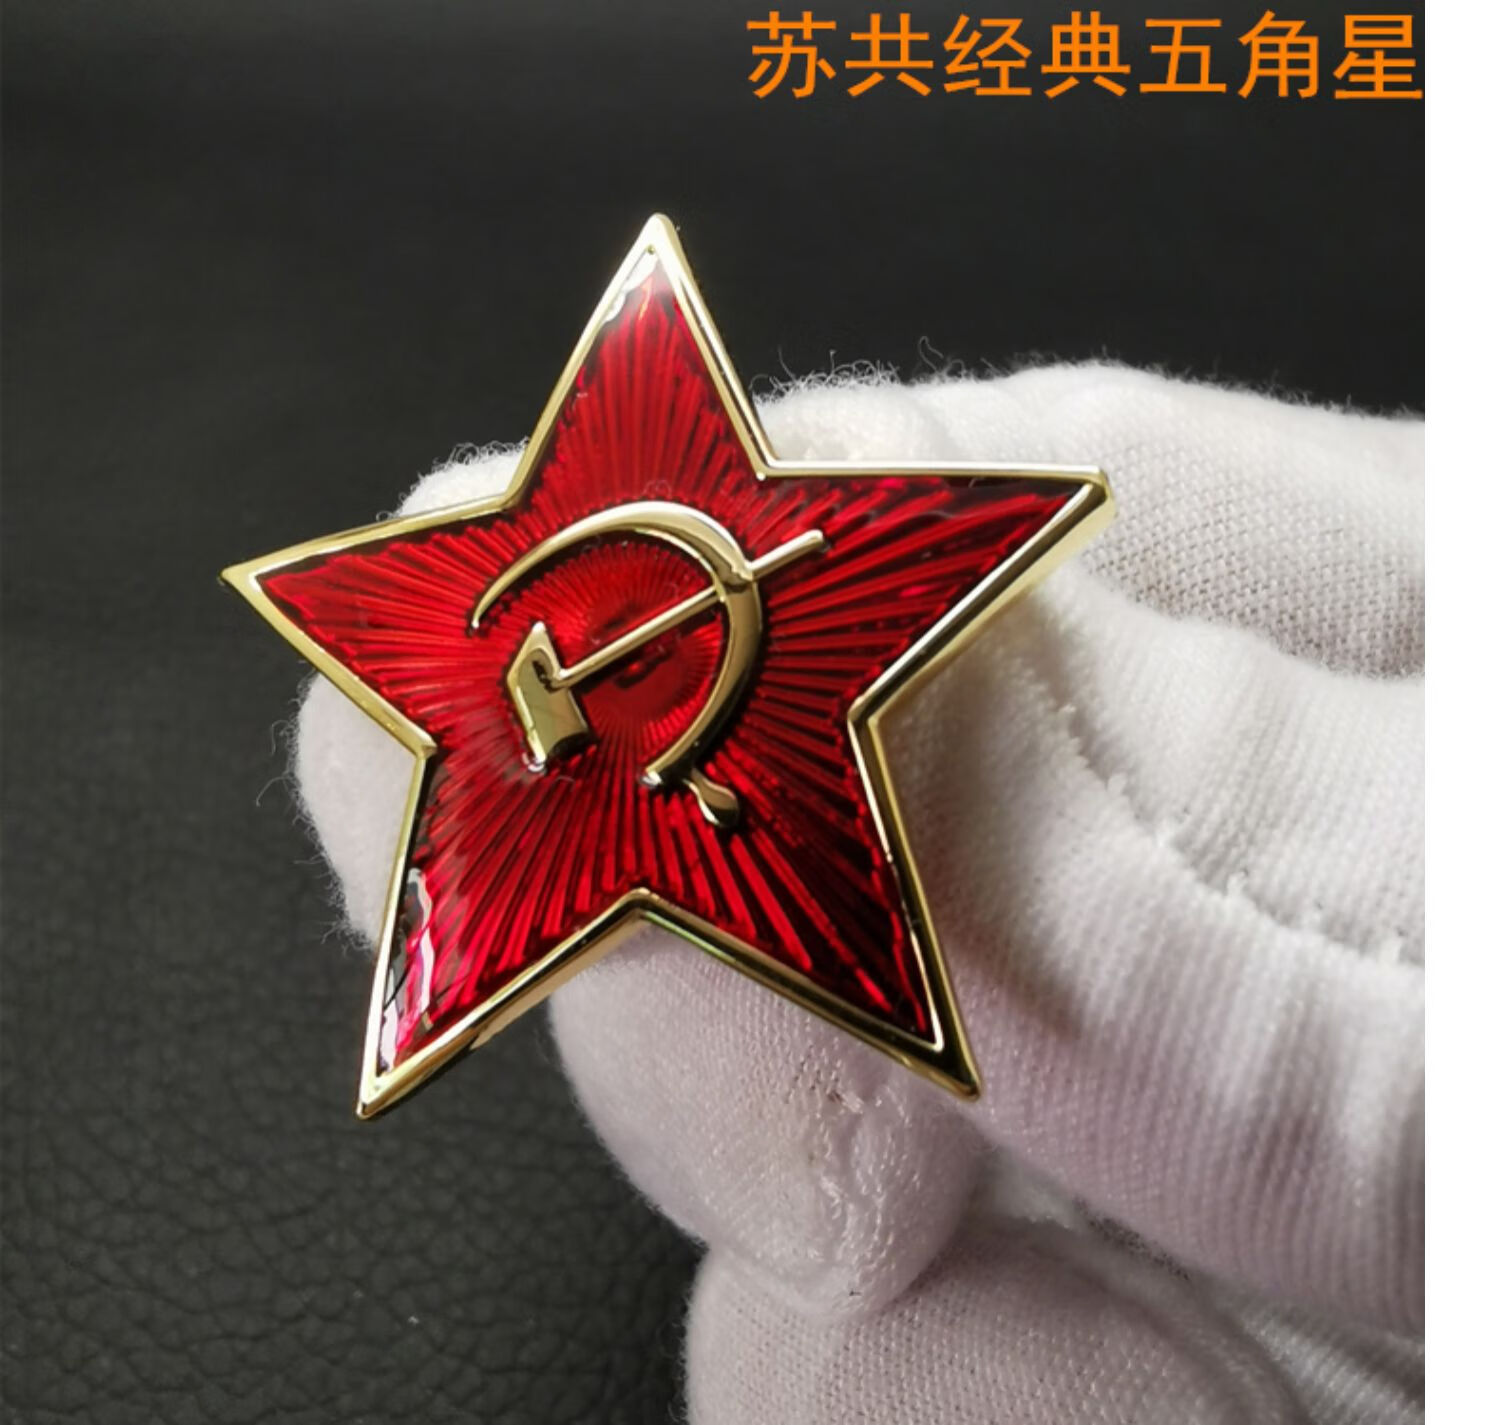 苏联勋章铜珐琅漆二战苏联周边cccp苏维埃证章五角红星勋章徽章胸针